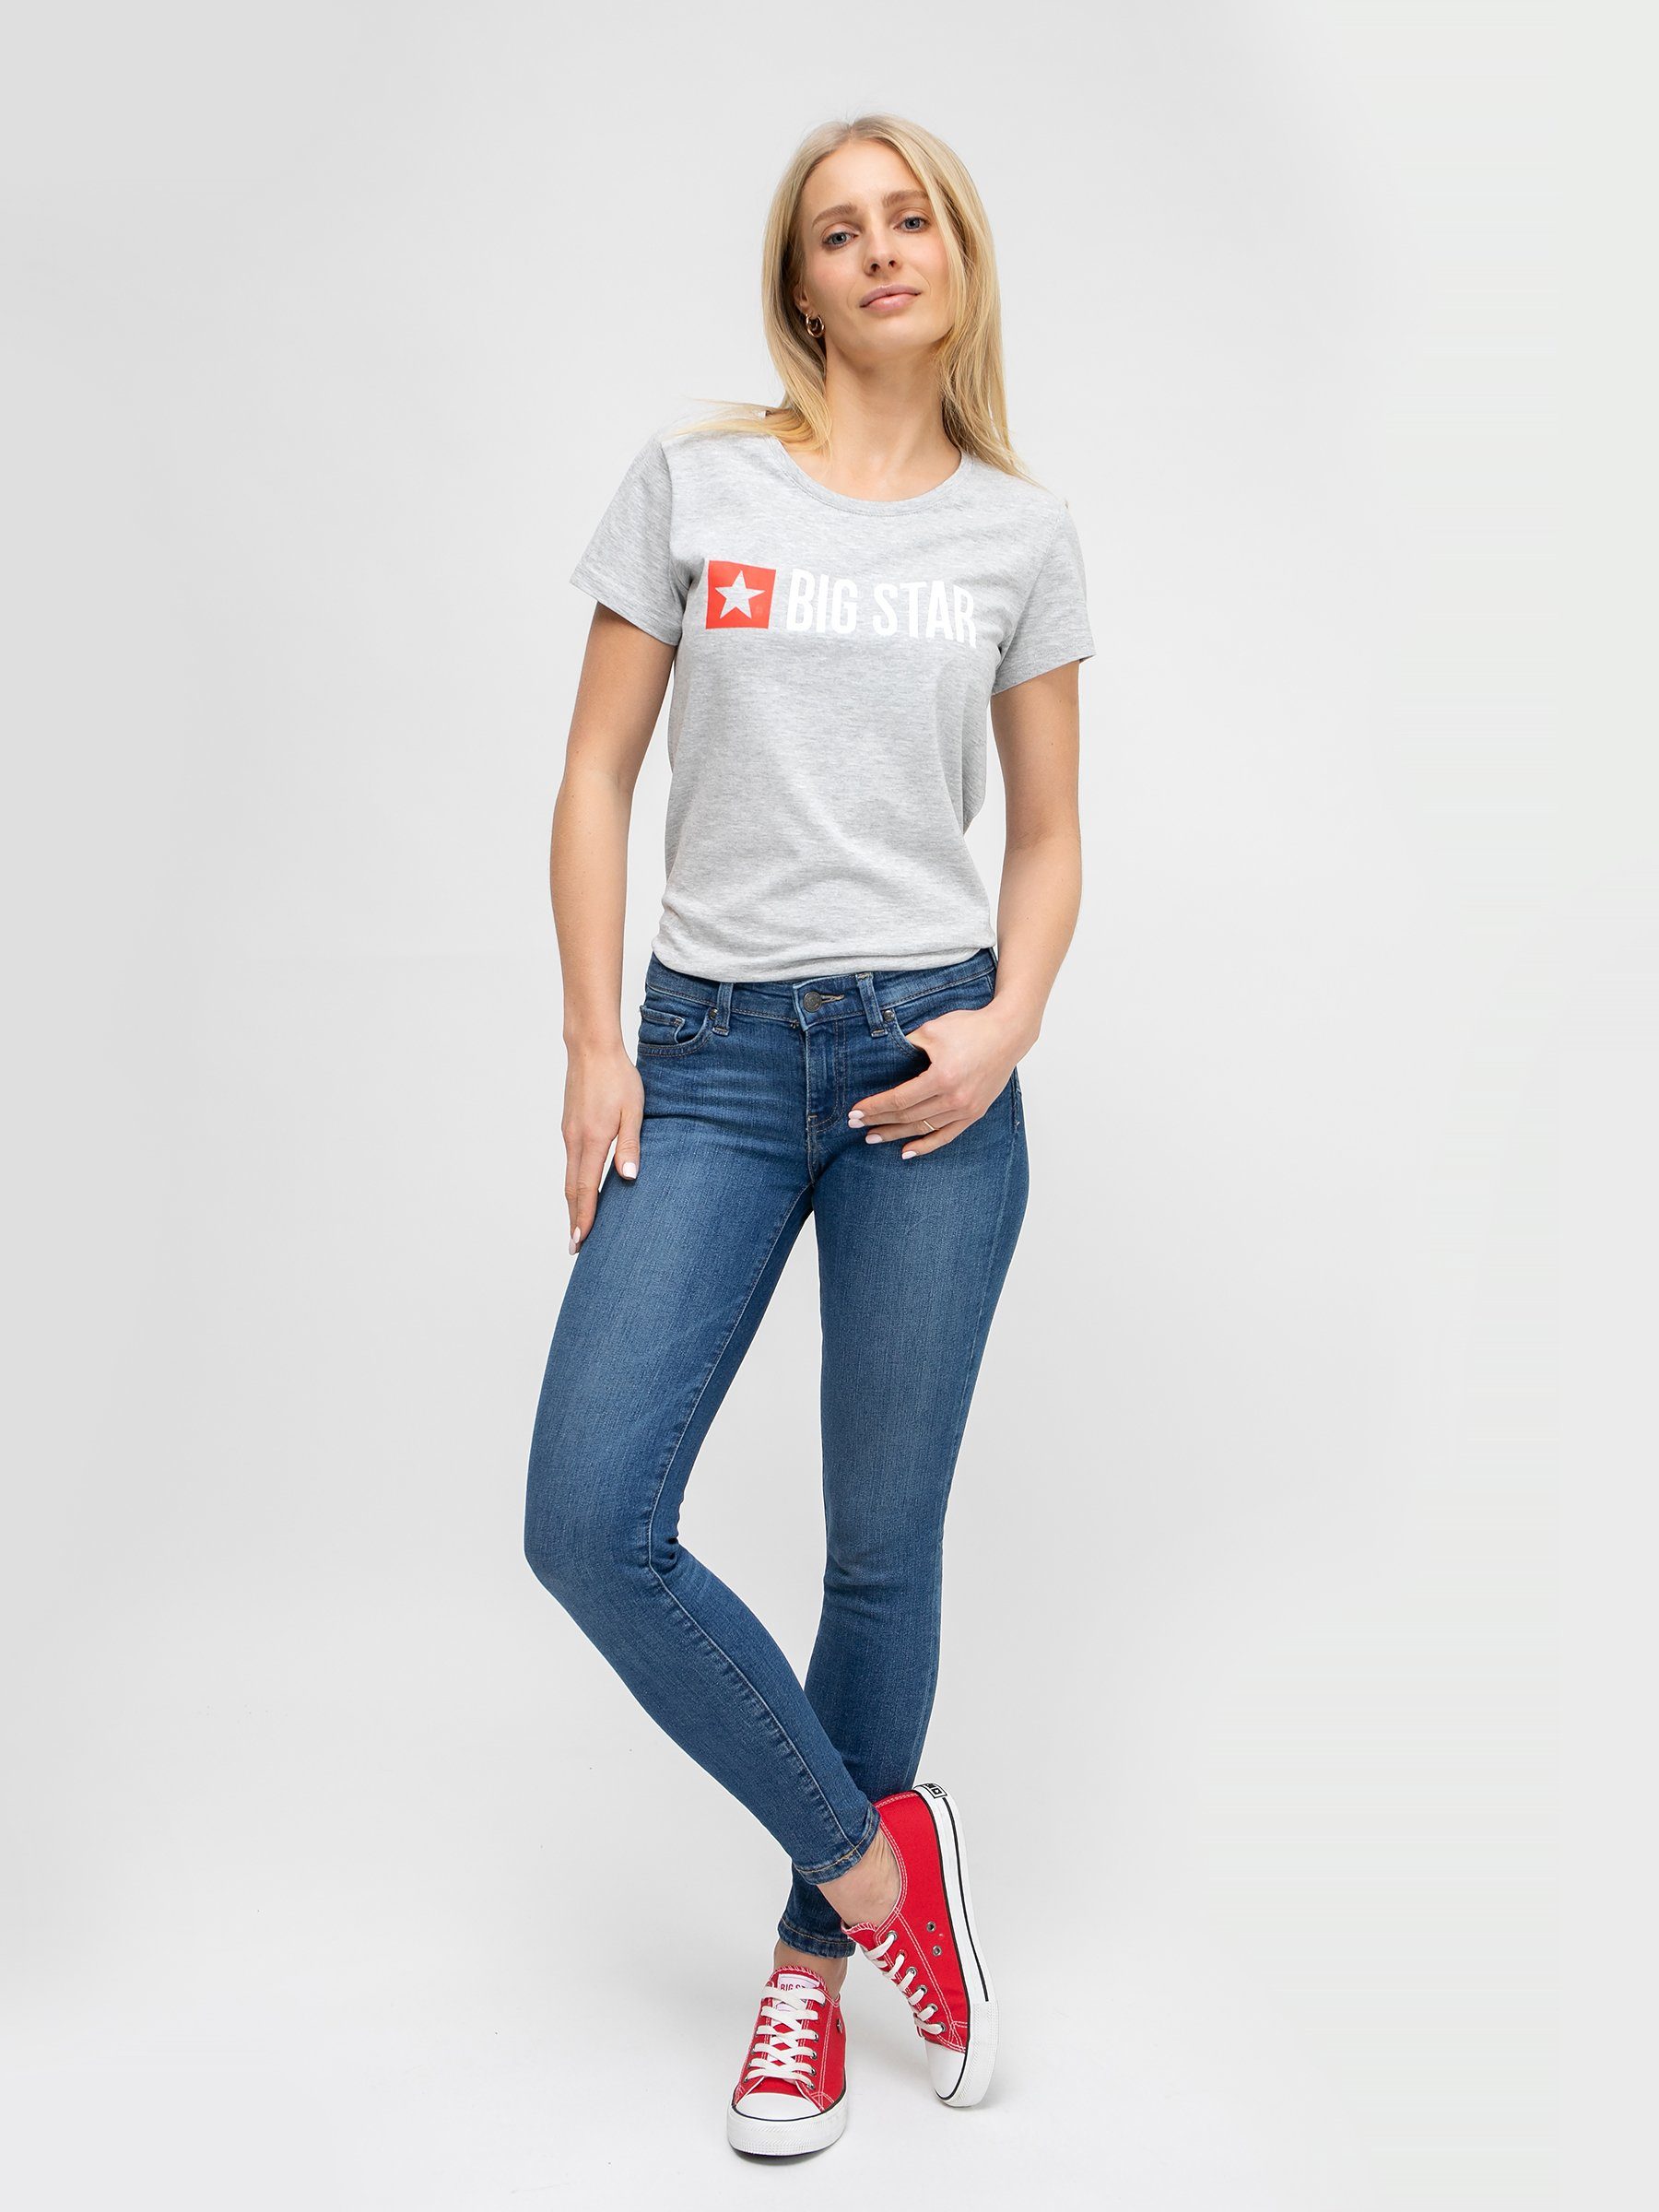 BIG STAR Damen Jeans online kaufen | OTTO